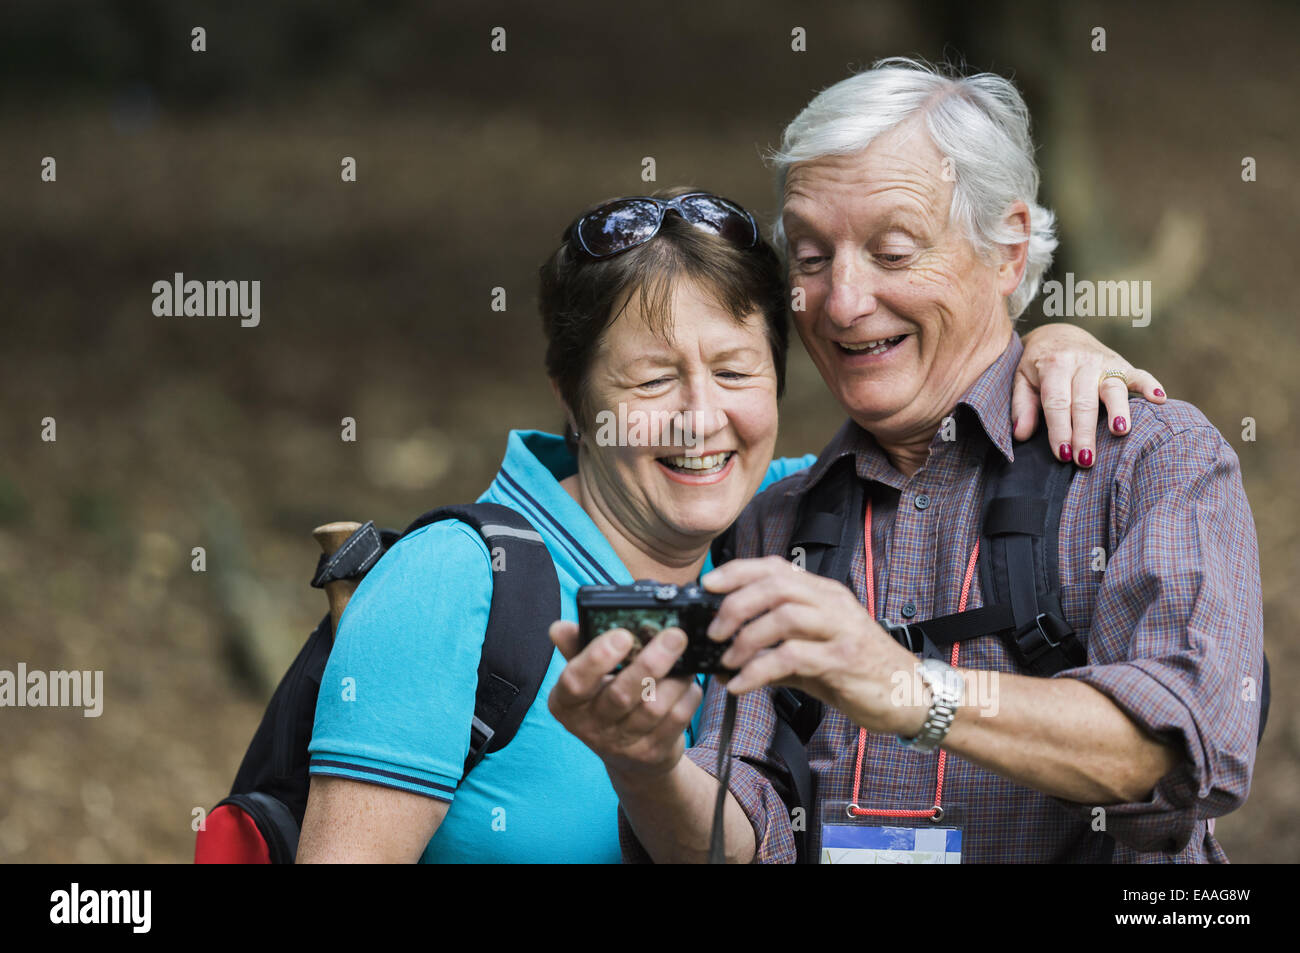 Una pareja madura busca en una cámara digital, riendo. Foto de stock